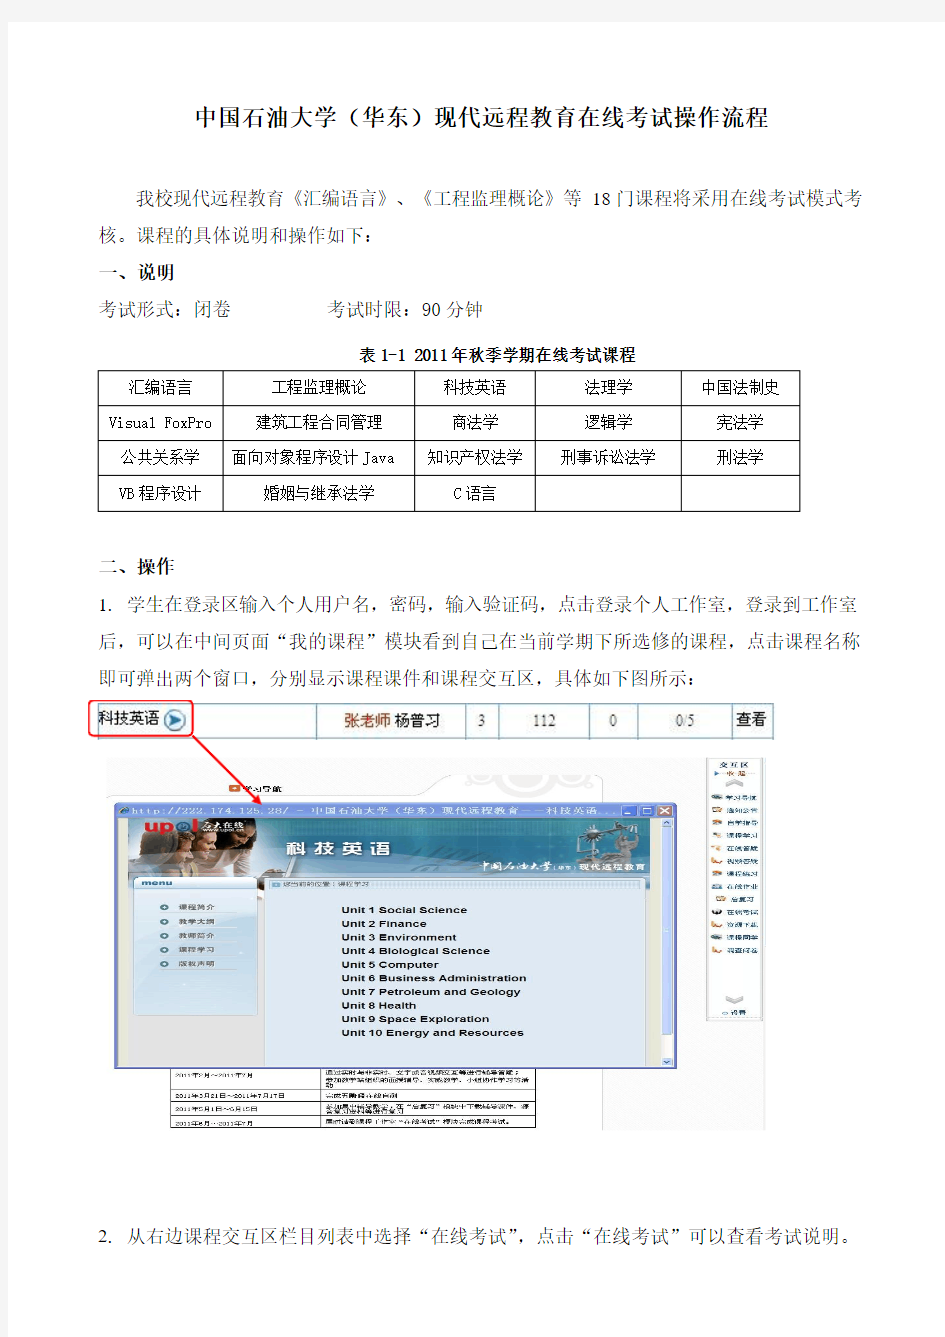 中国石油大学(华东)现代远程教育在线考试操作流程